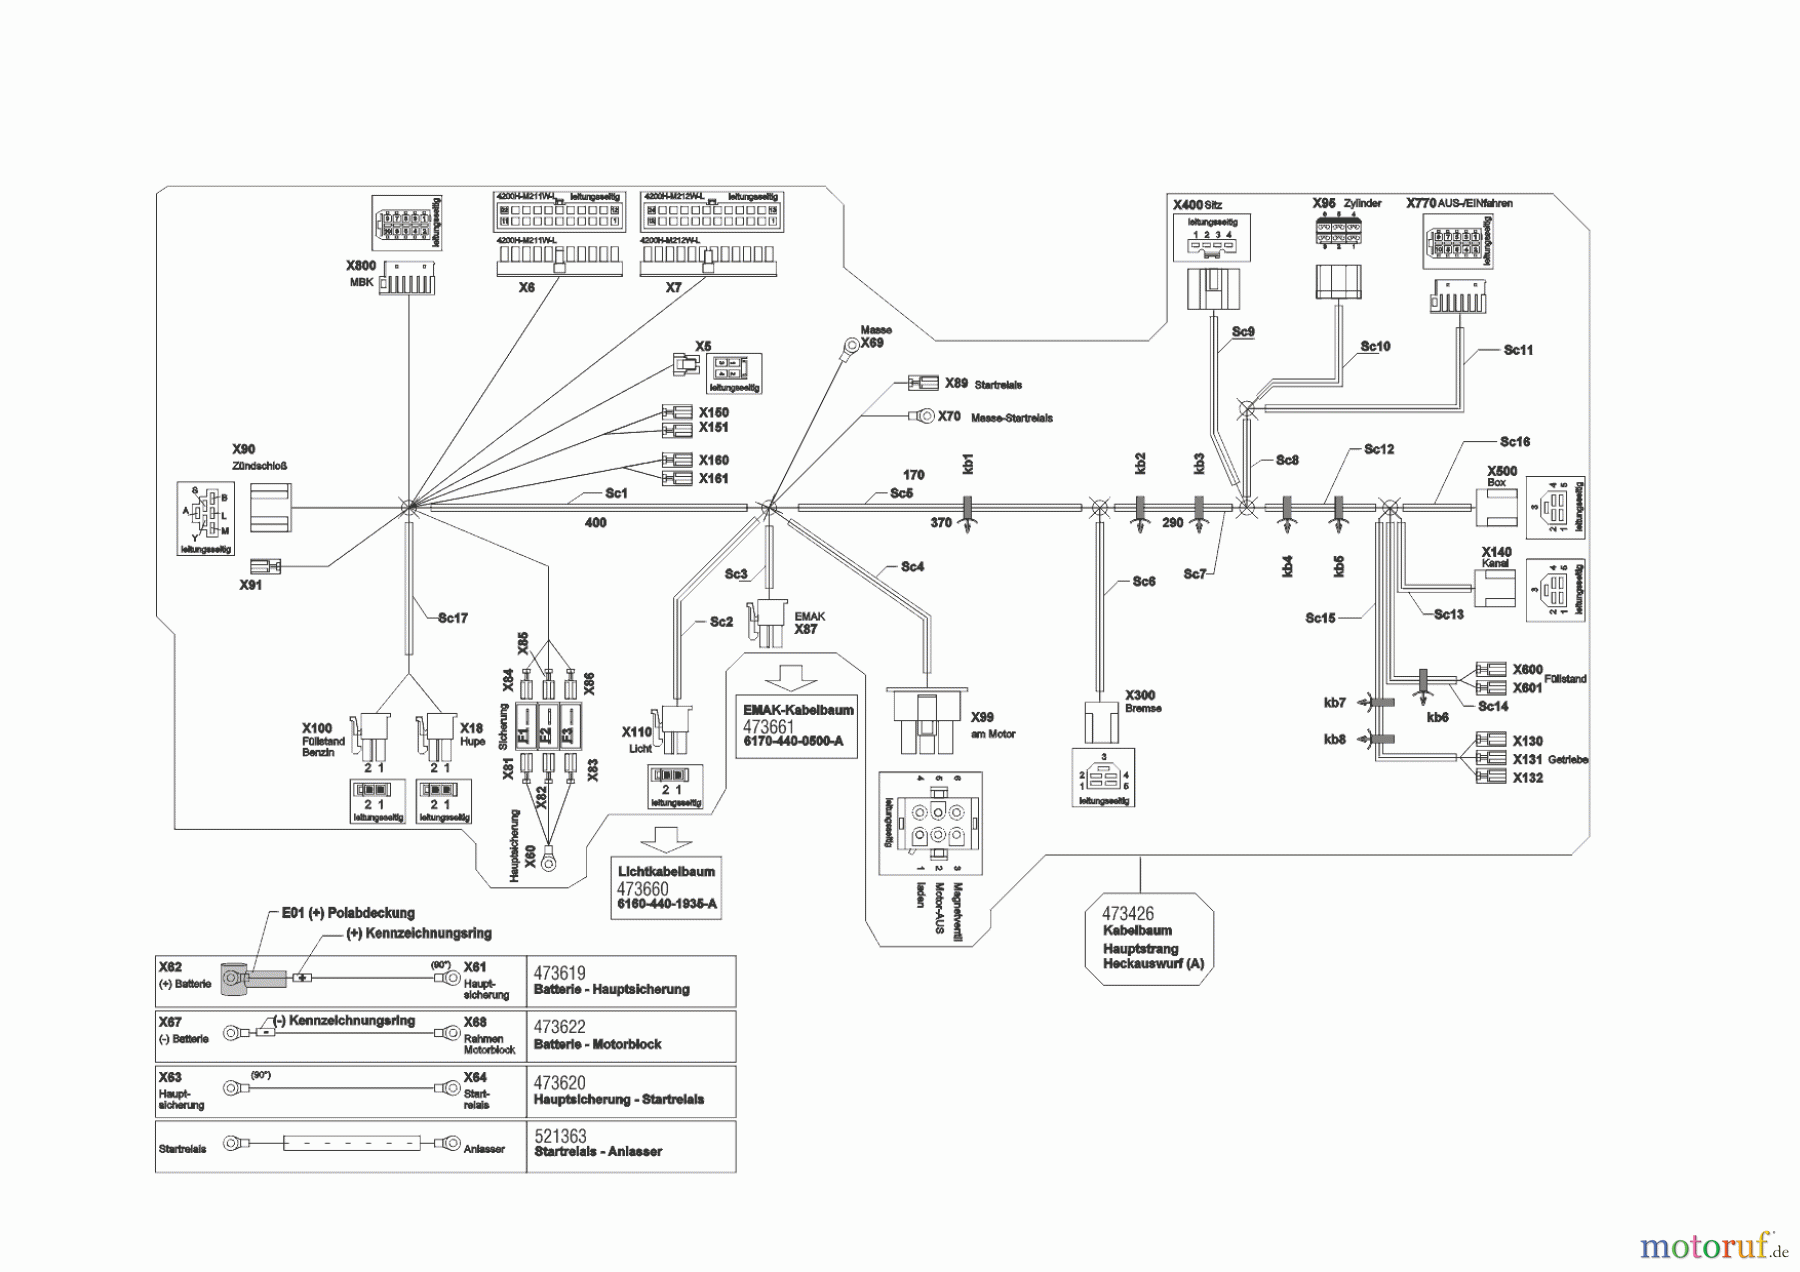  Powerline Gartentechnik Rasentraktor T23-125.4 HD V2 (ohne Mähwerk)  02/2014 Seite 9